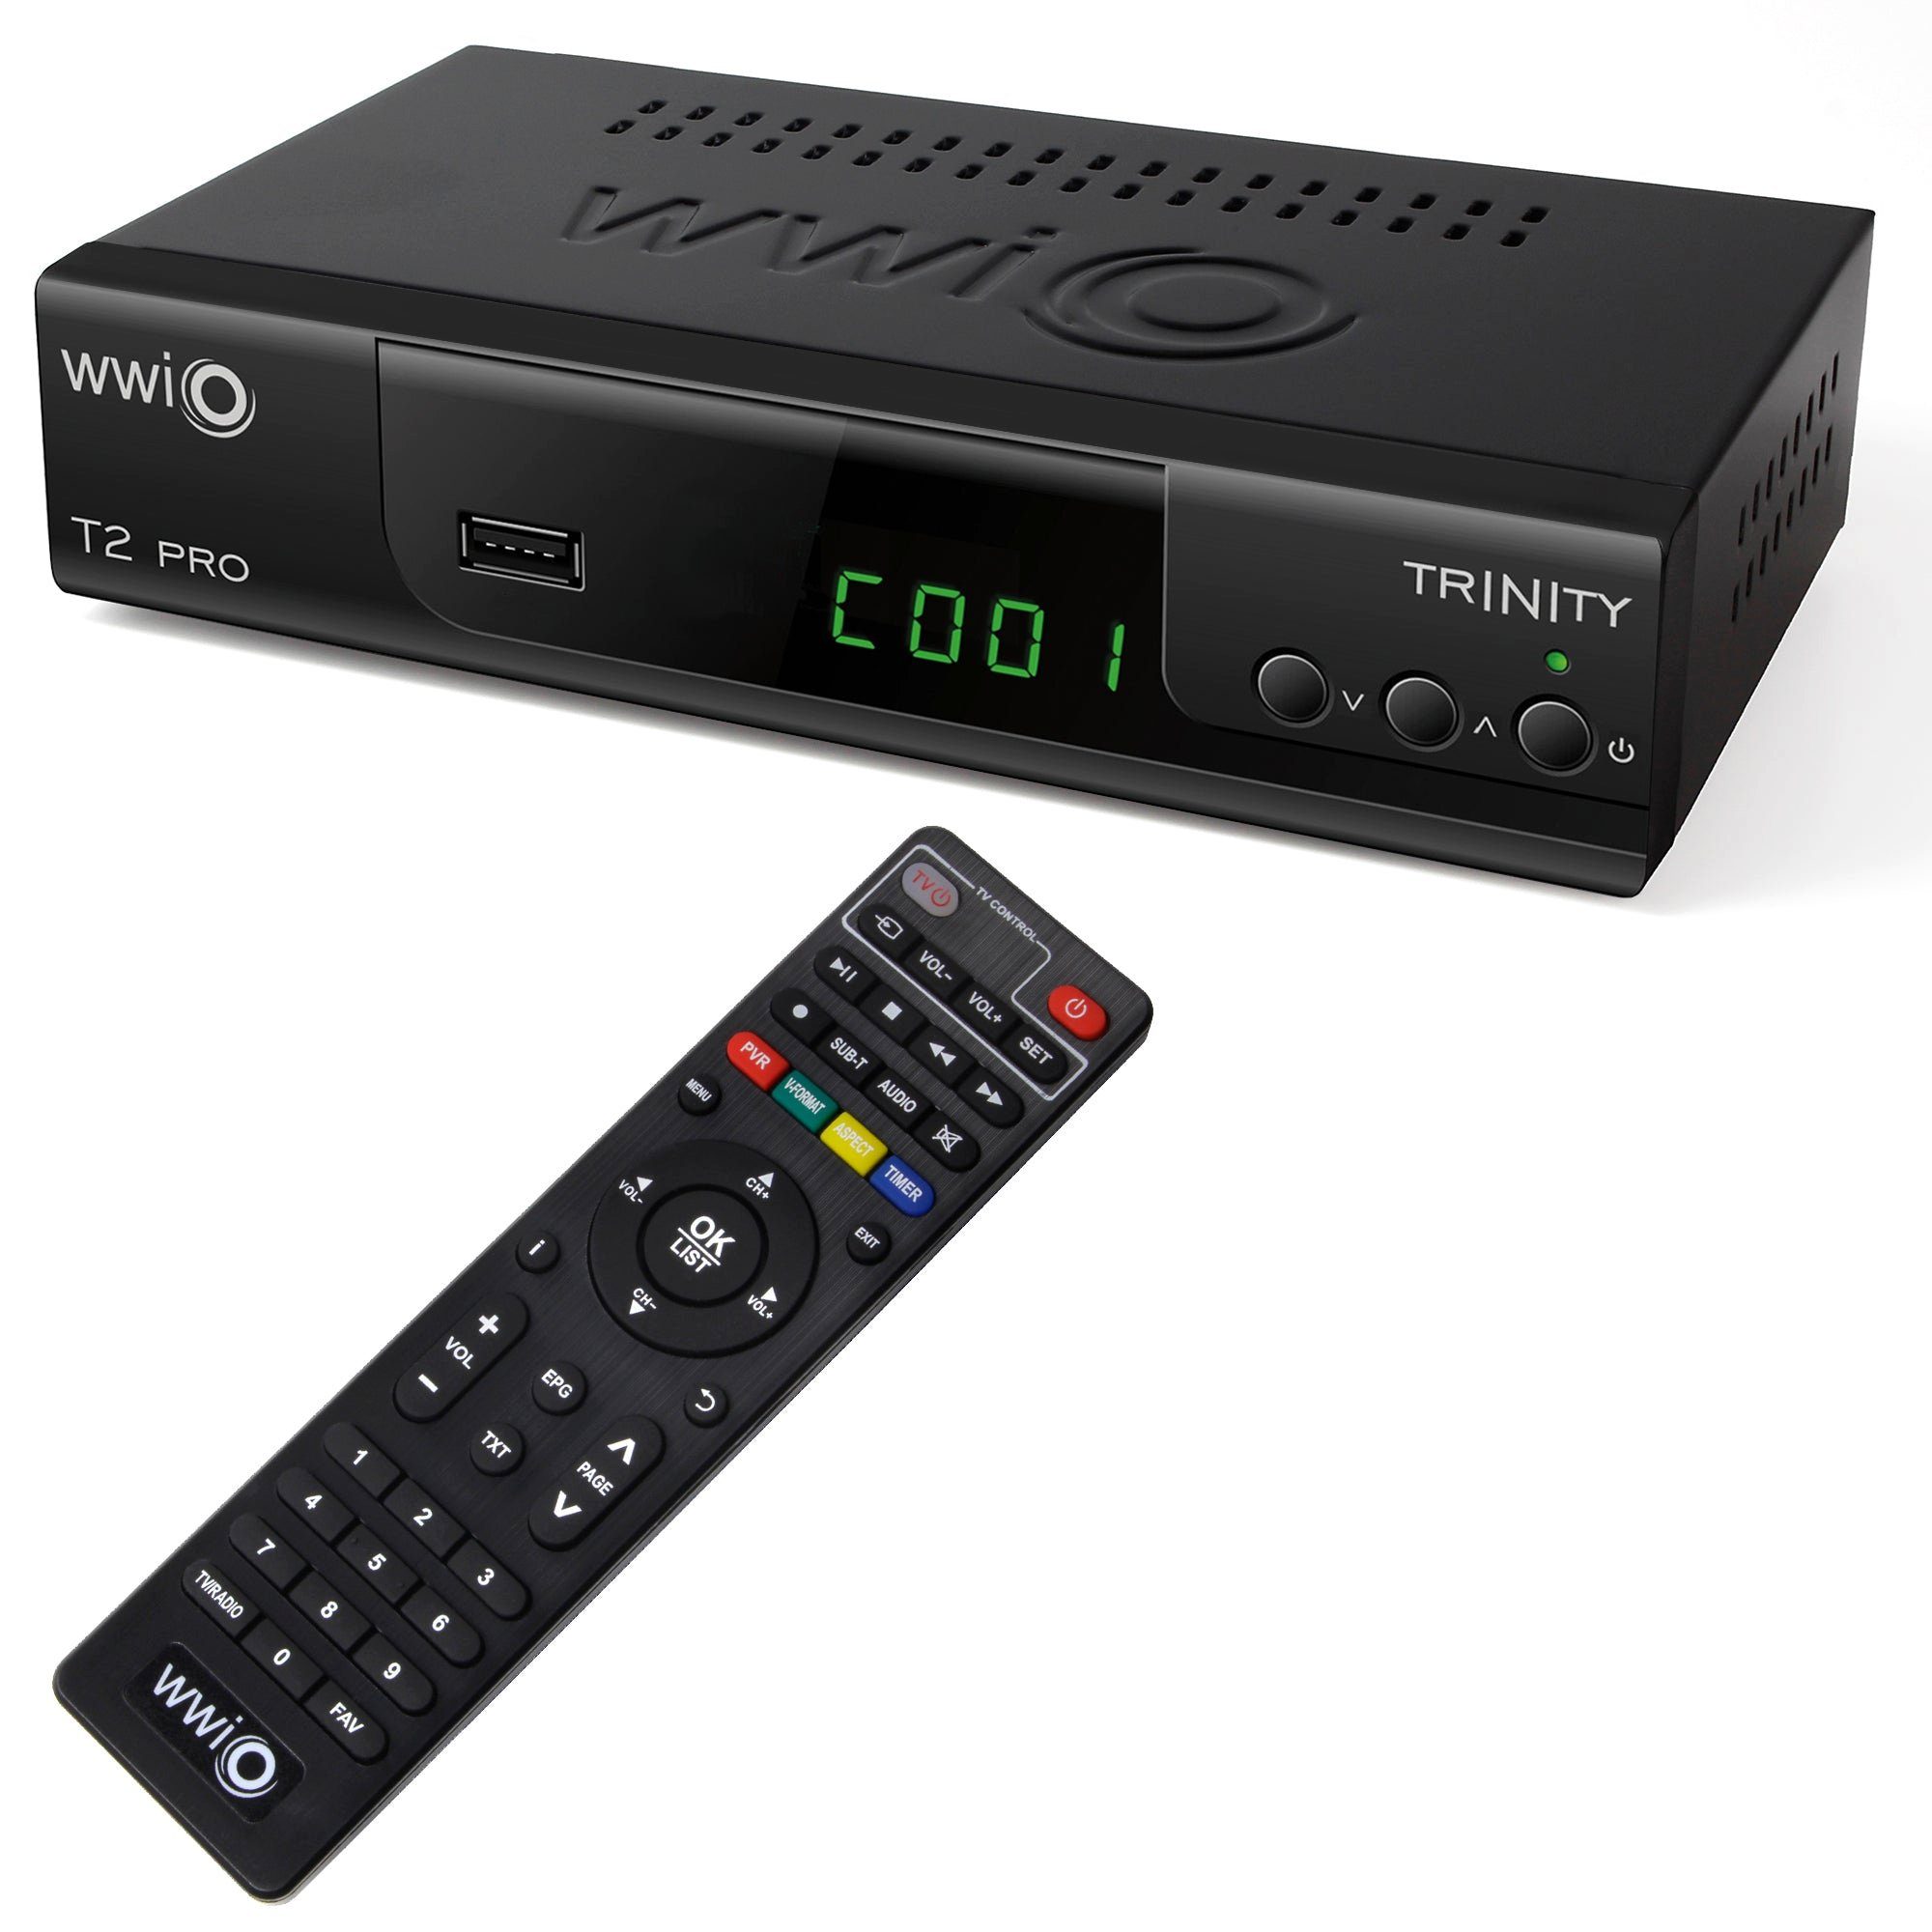 WWIO Trinity T2 PRO with 2-in-1 RCU DVB-T2, FullHD, USB, HDMI, PVR DVB-T2 HD Receiver